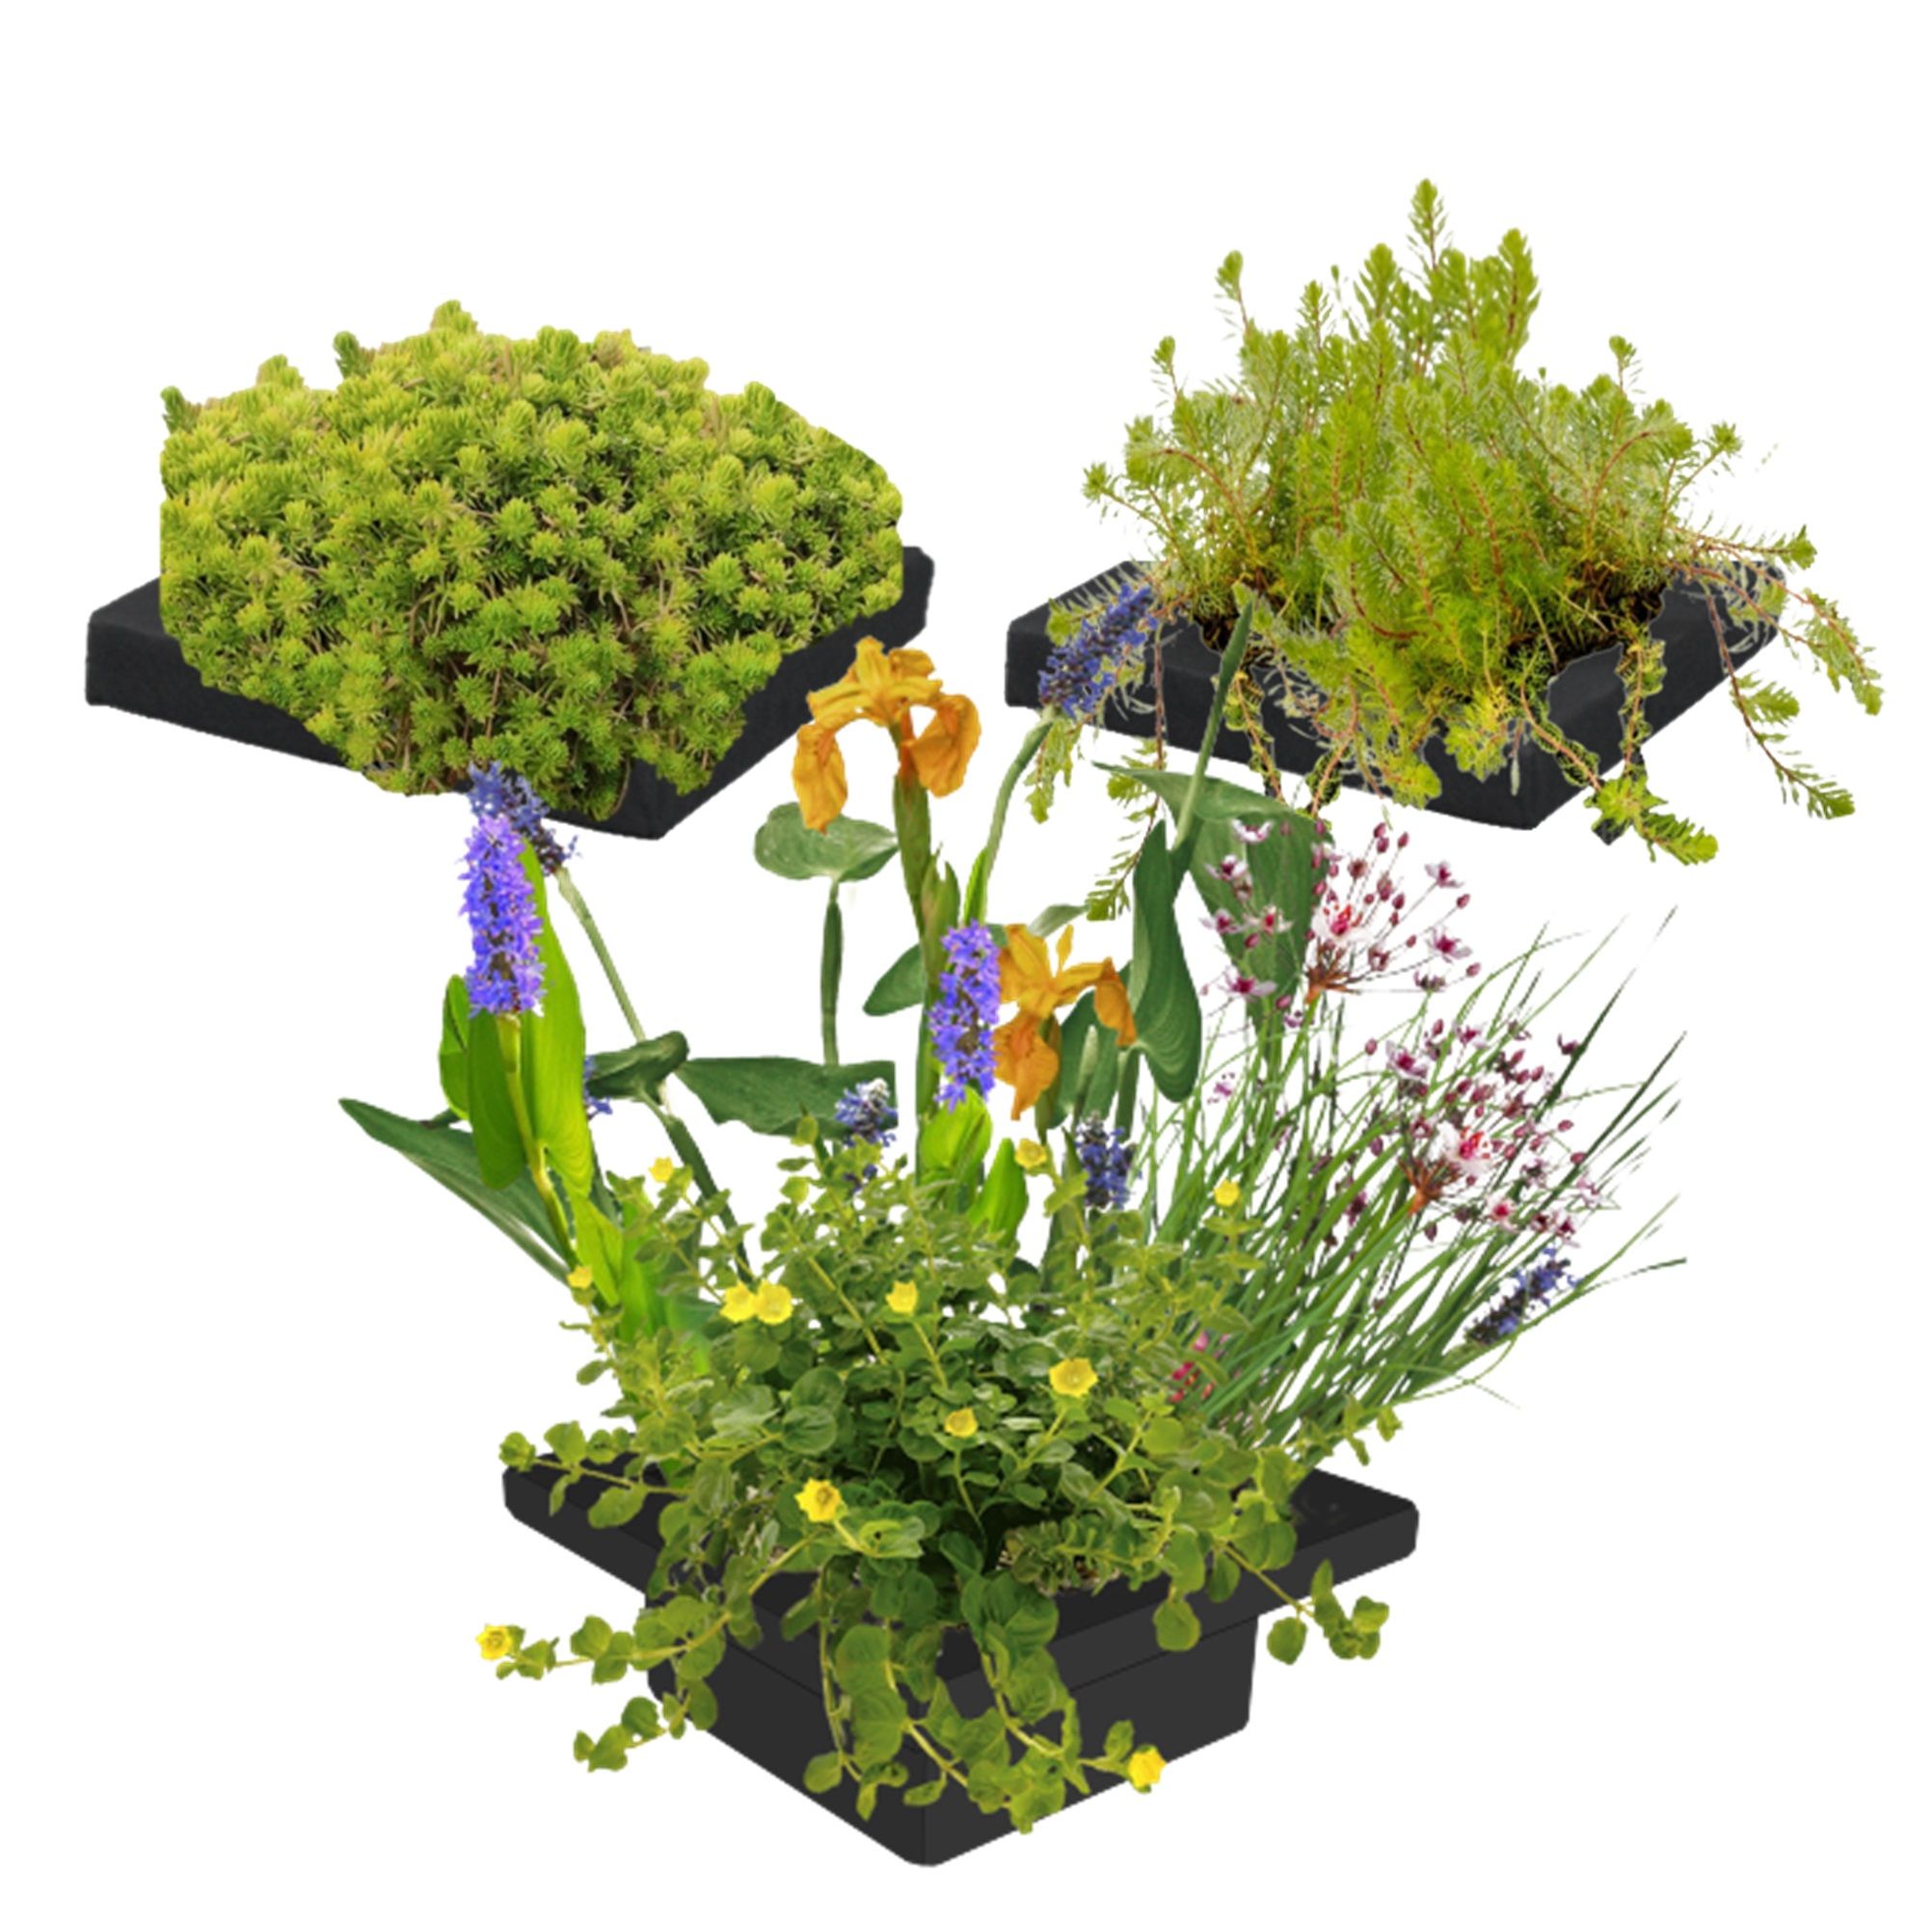 vdvelde.com - Îlot de plantes flottantes - DIY - 12 plantes aquatiques fleuries et oxygénantes - 3x anneau flottant inclus